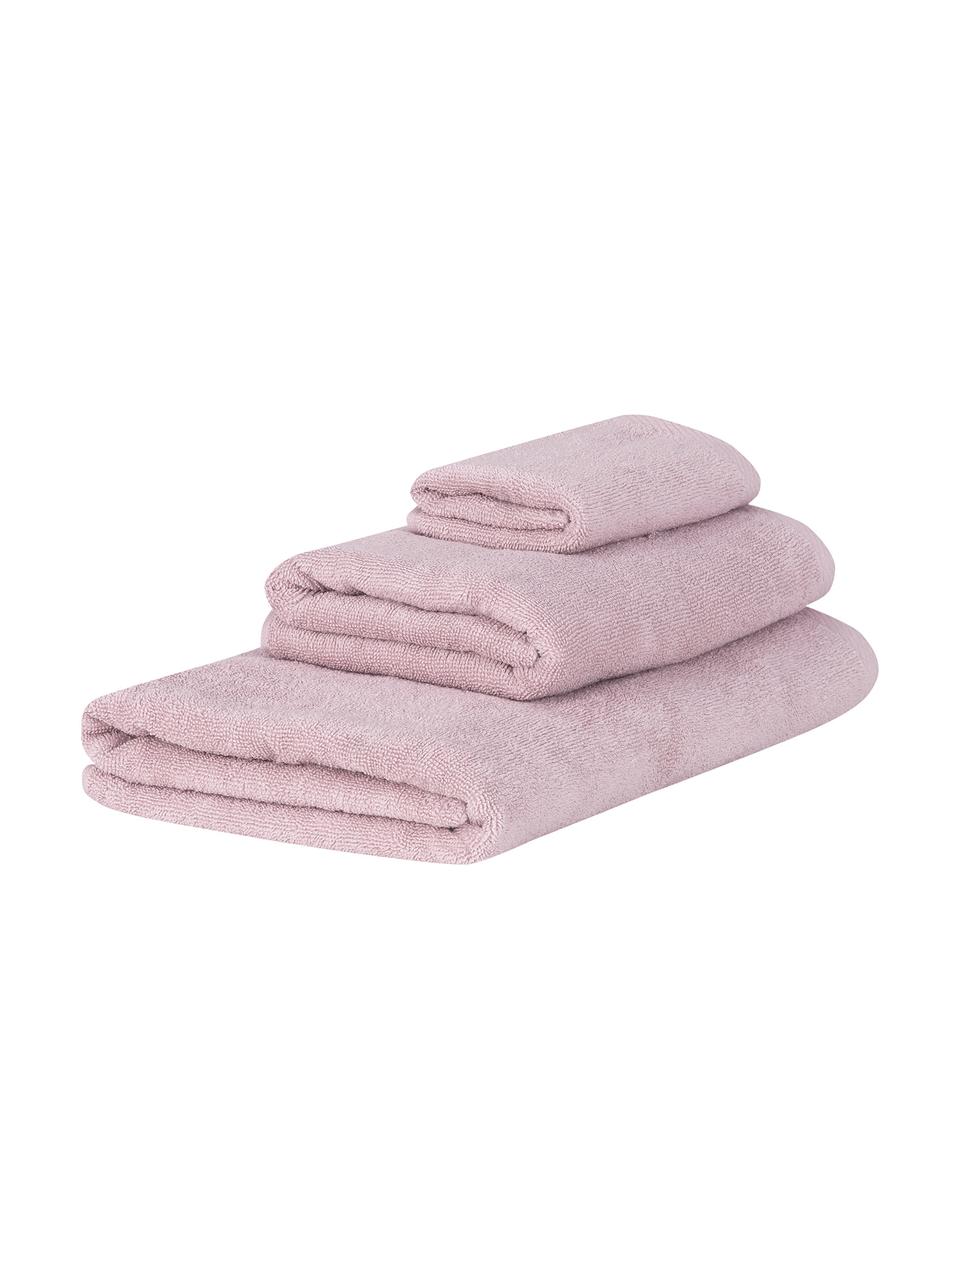 Súprava jednofarebných uterákov Comfort, 3 diely, Staroružová, Súprava s rôznymi veľkosťami